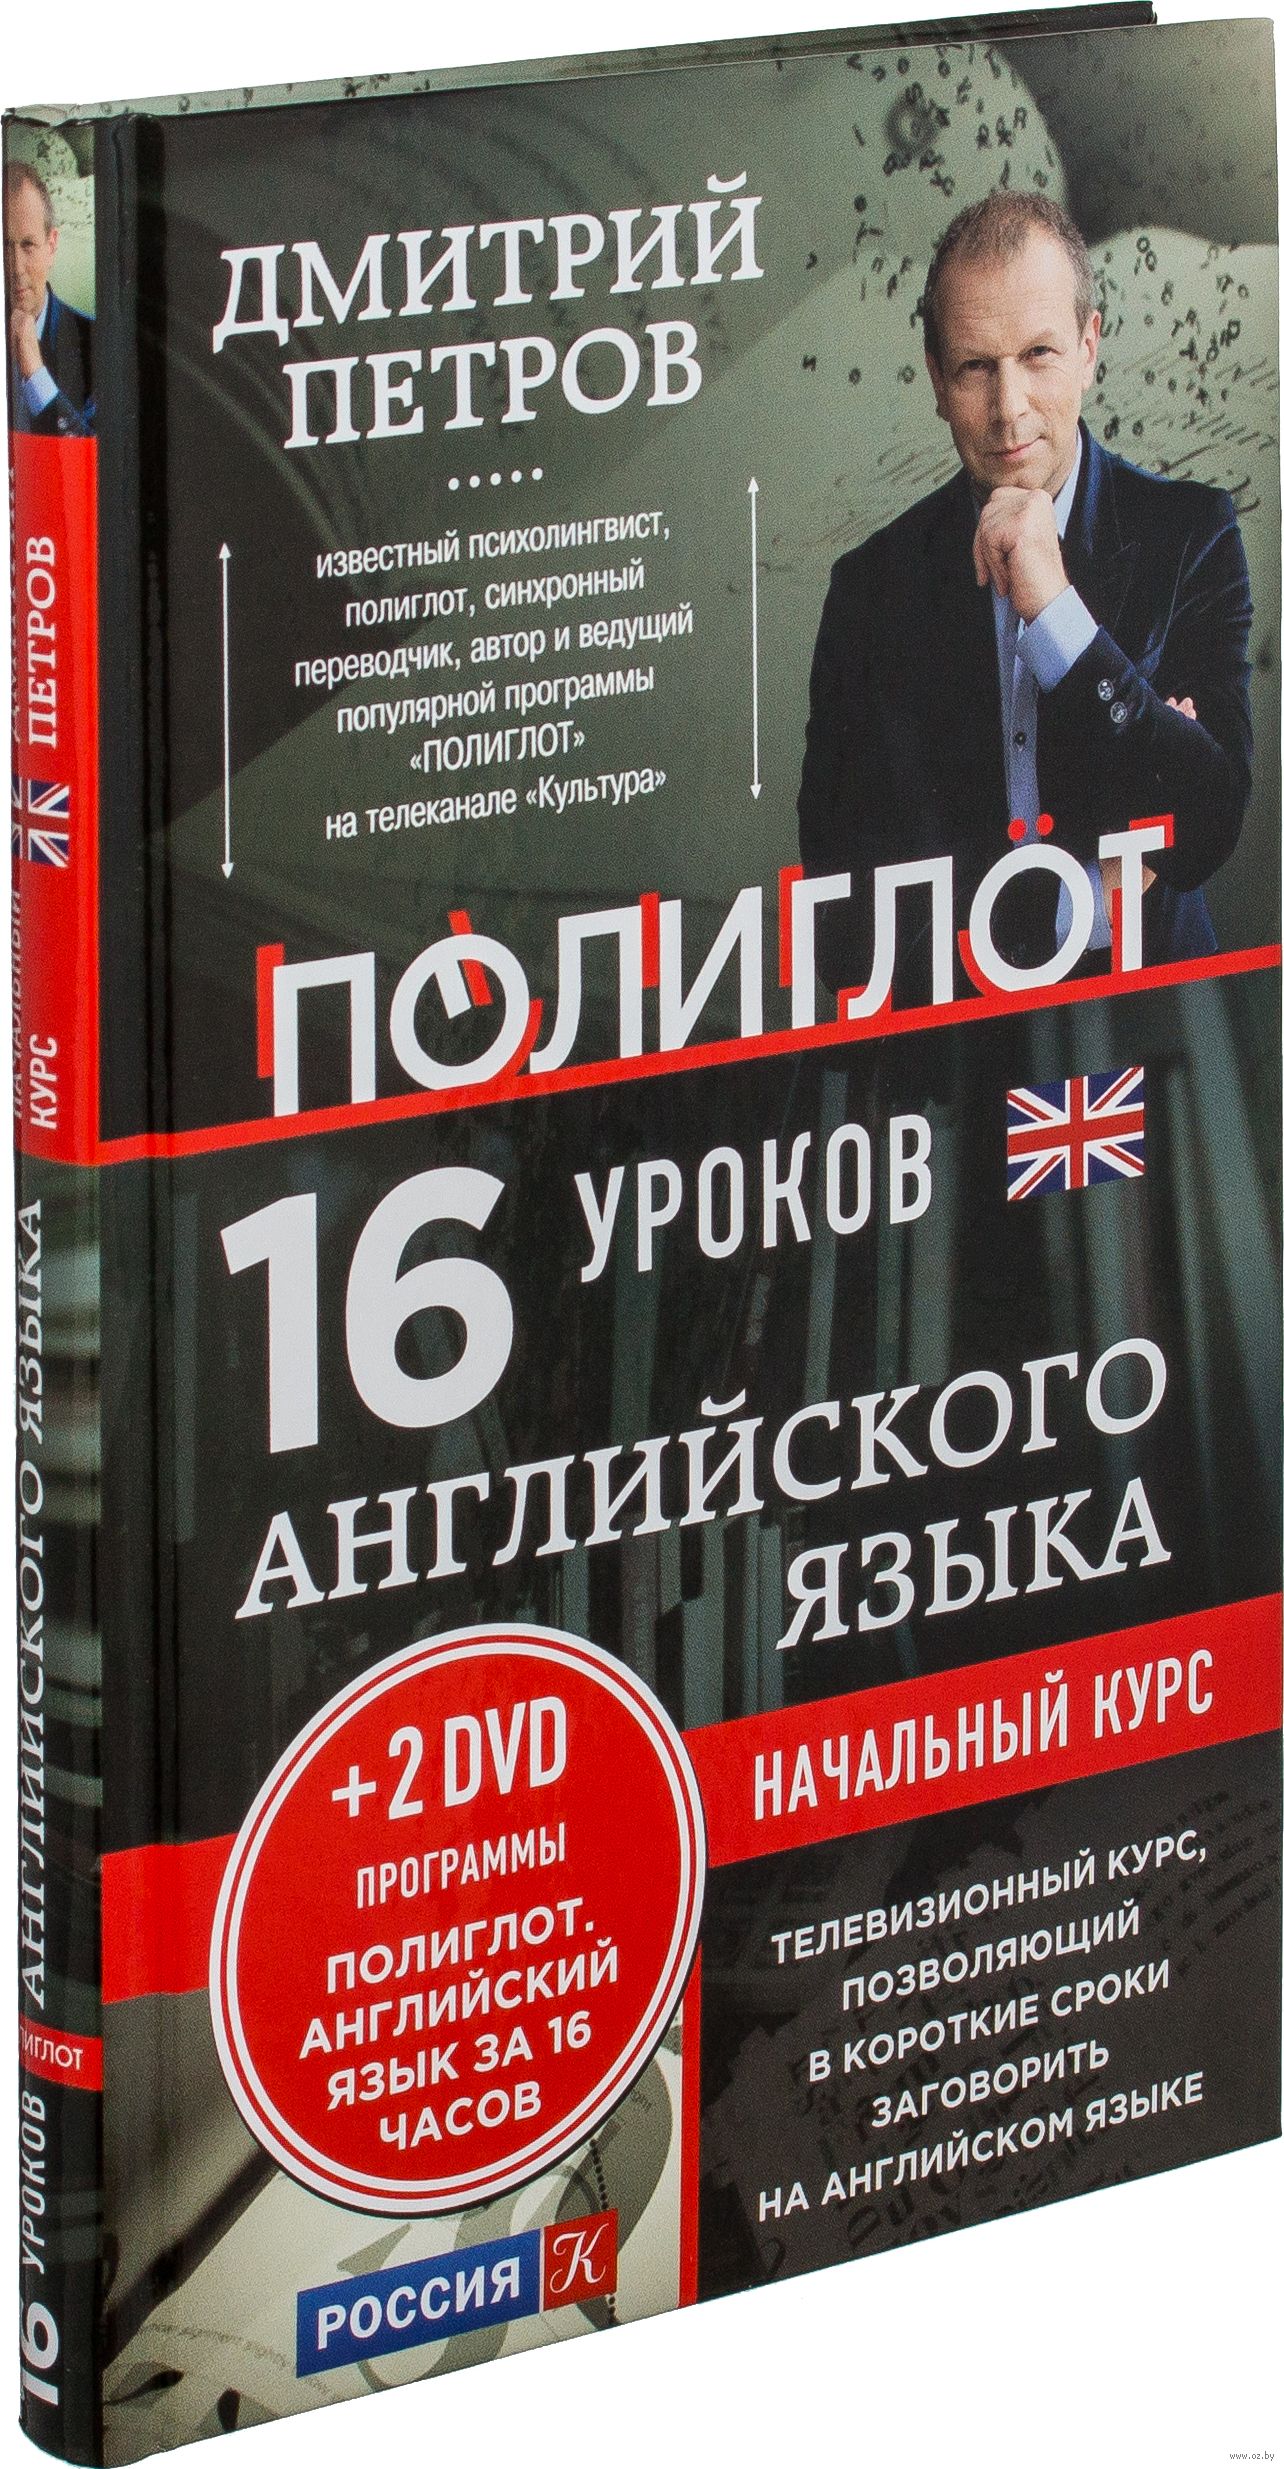 Английский язык 16 уроков полиглота петрова. Английский 16 уроков с Дмитрием Петровым. Полиглот английский за 16 часов с Дмитрием Петровым.